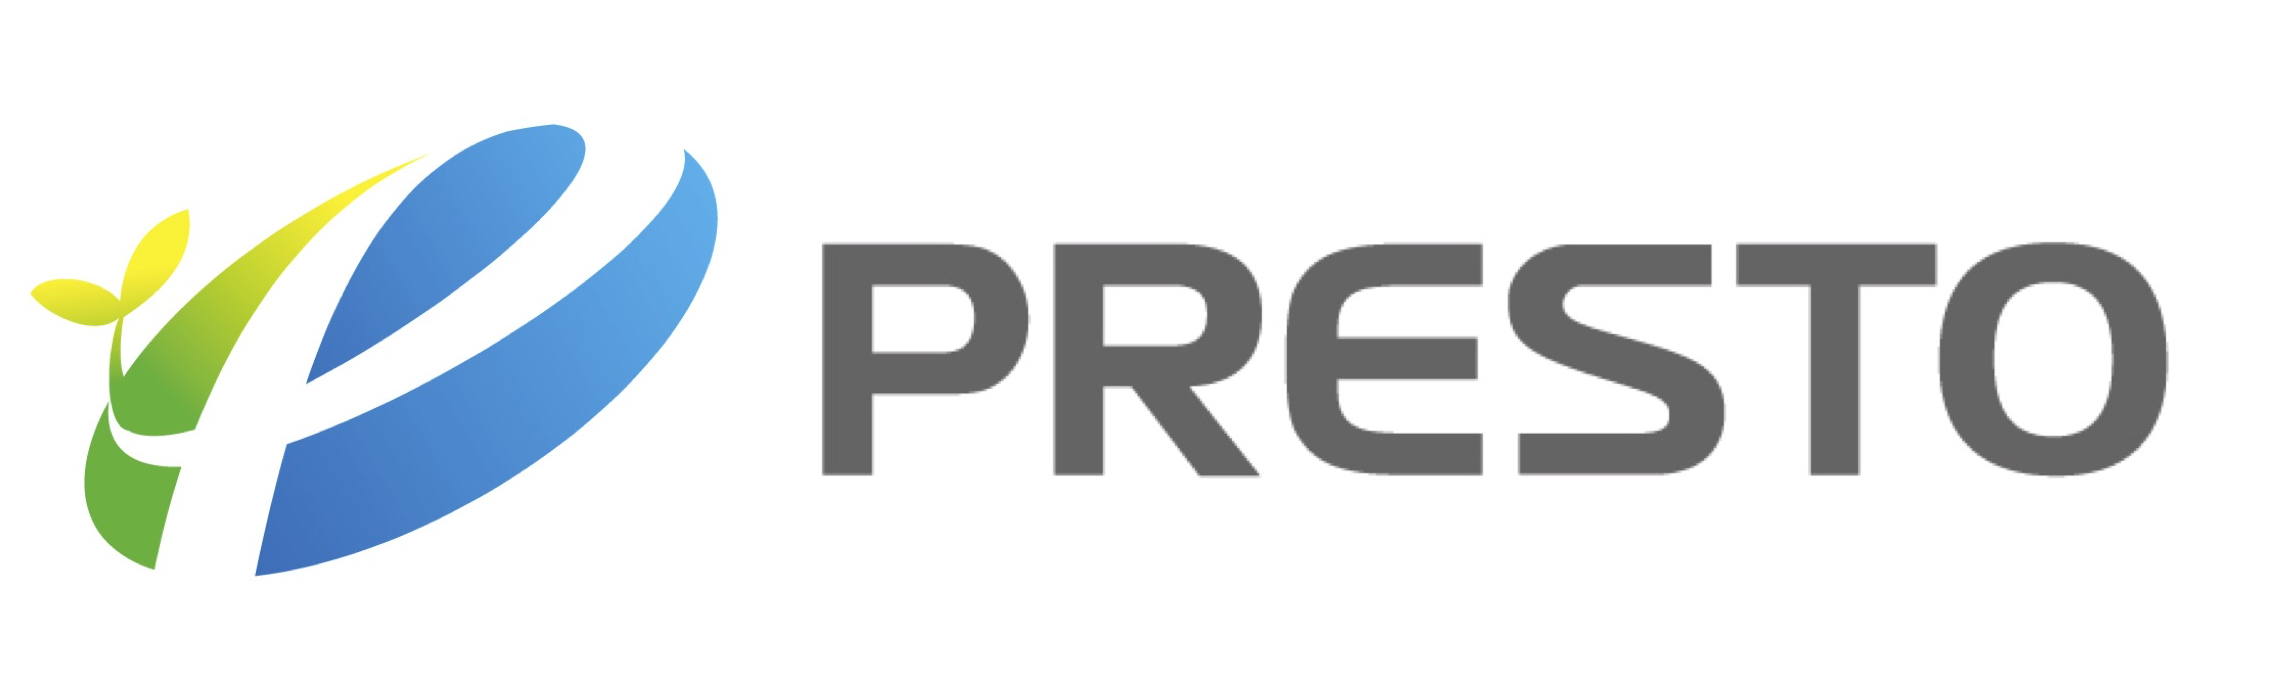 Presto Inc. Official Web Site